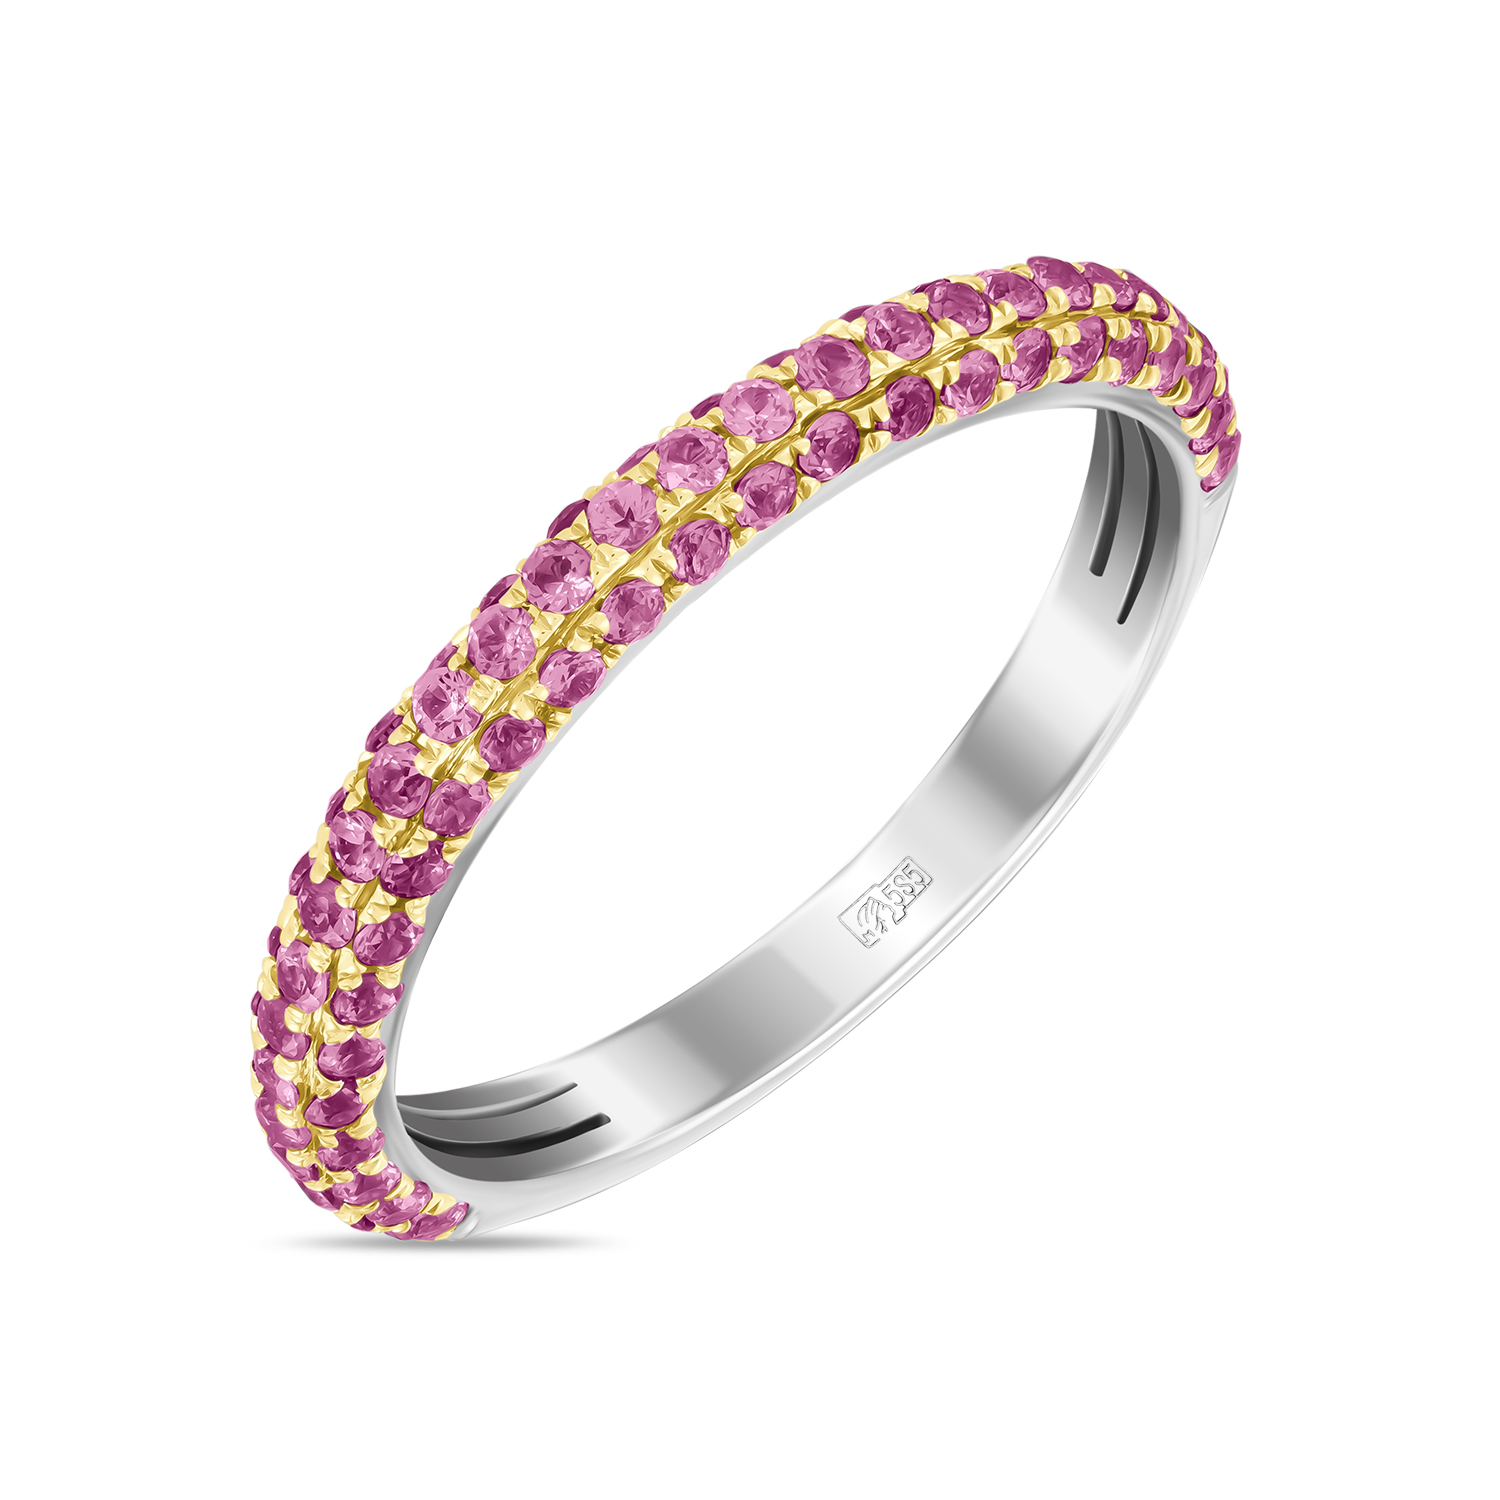 Кольца МЮЗ Золотое кольцо с цветными сапфирами кольца мюз золотое кольцо с жемчугом цветными сапфирами и сапфирами